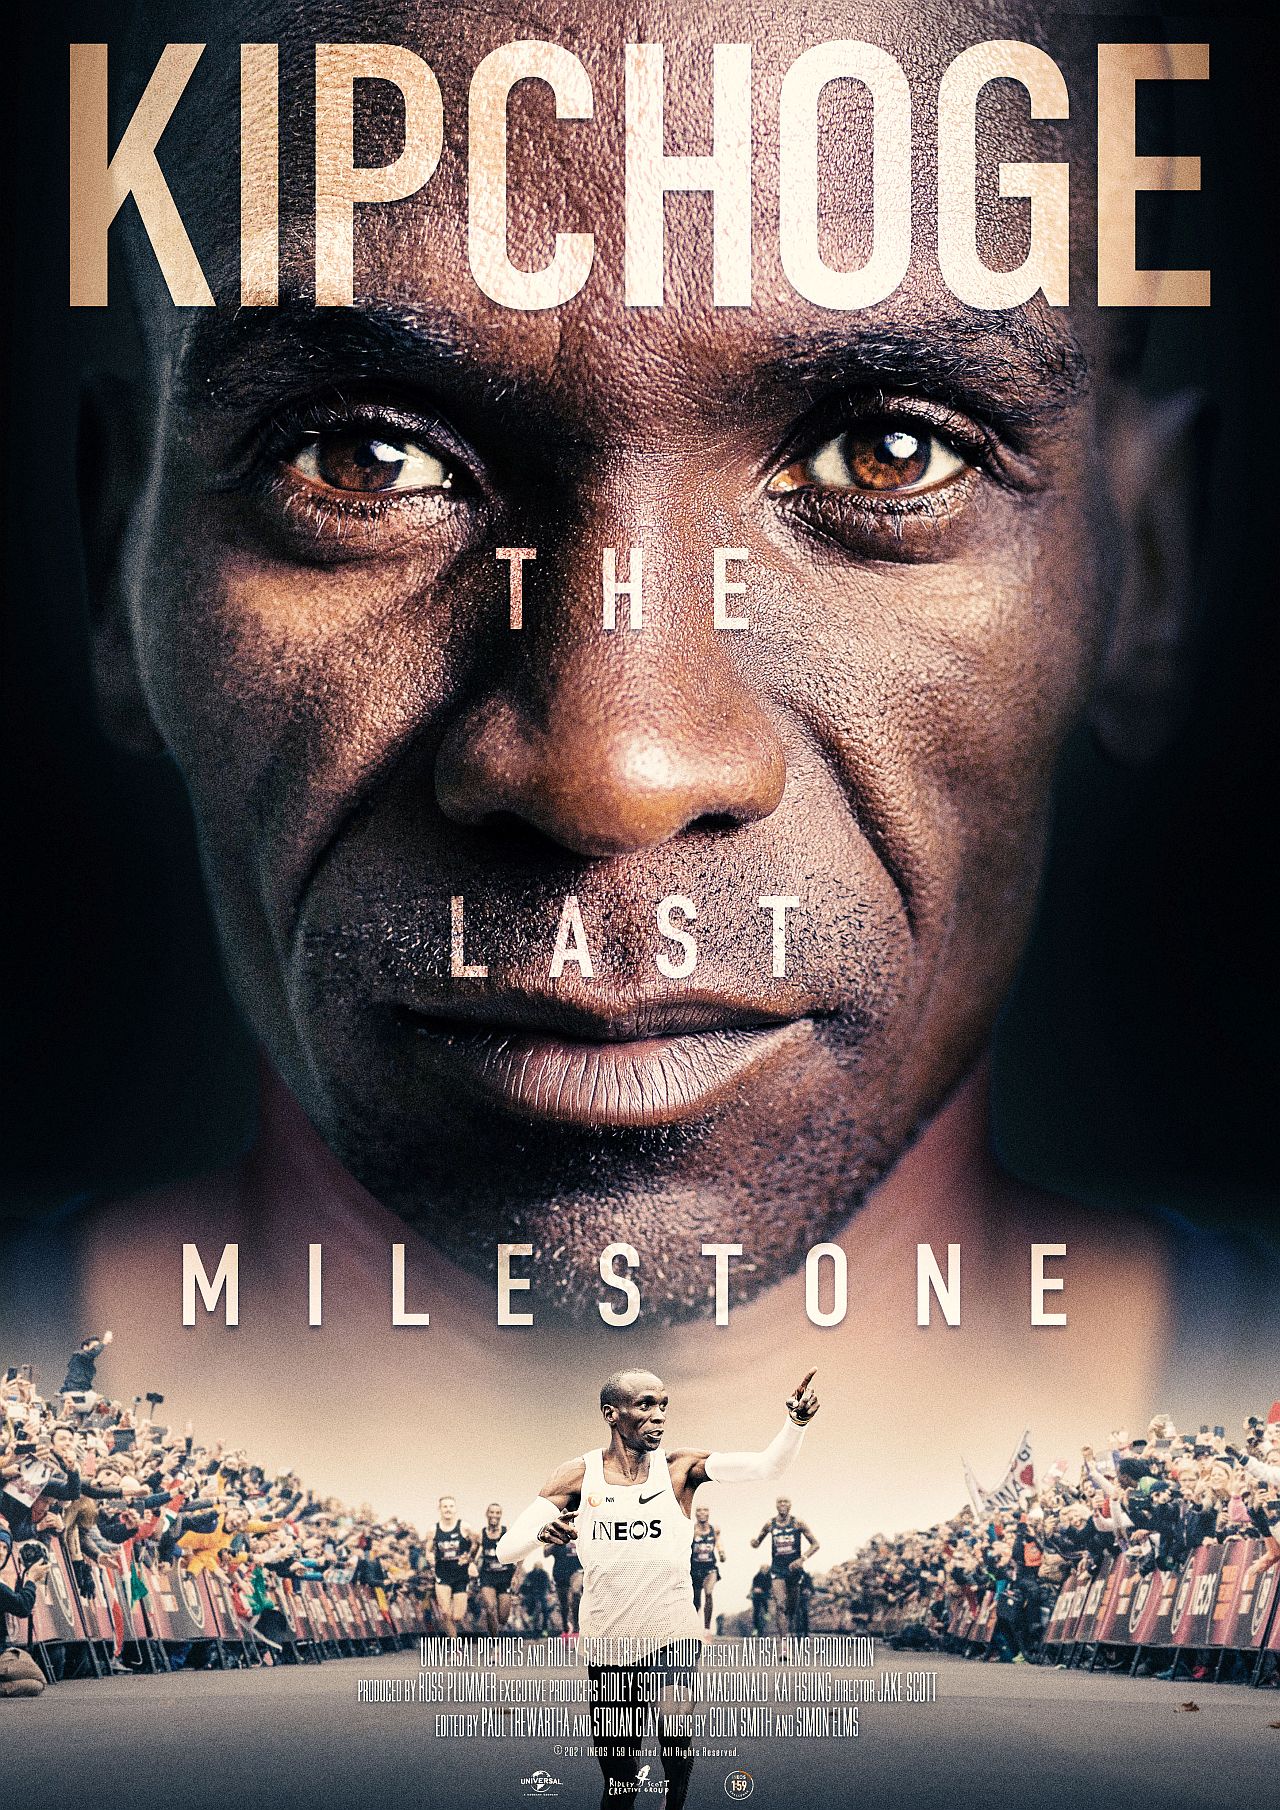 "Kipchoge-The Last Milestone" erinnert an eine Ehrenrunde für sportliche Großtaten